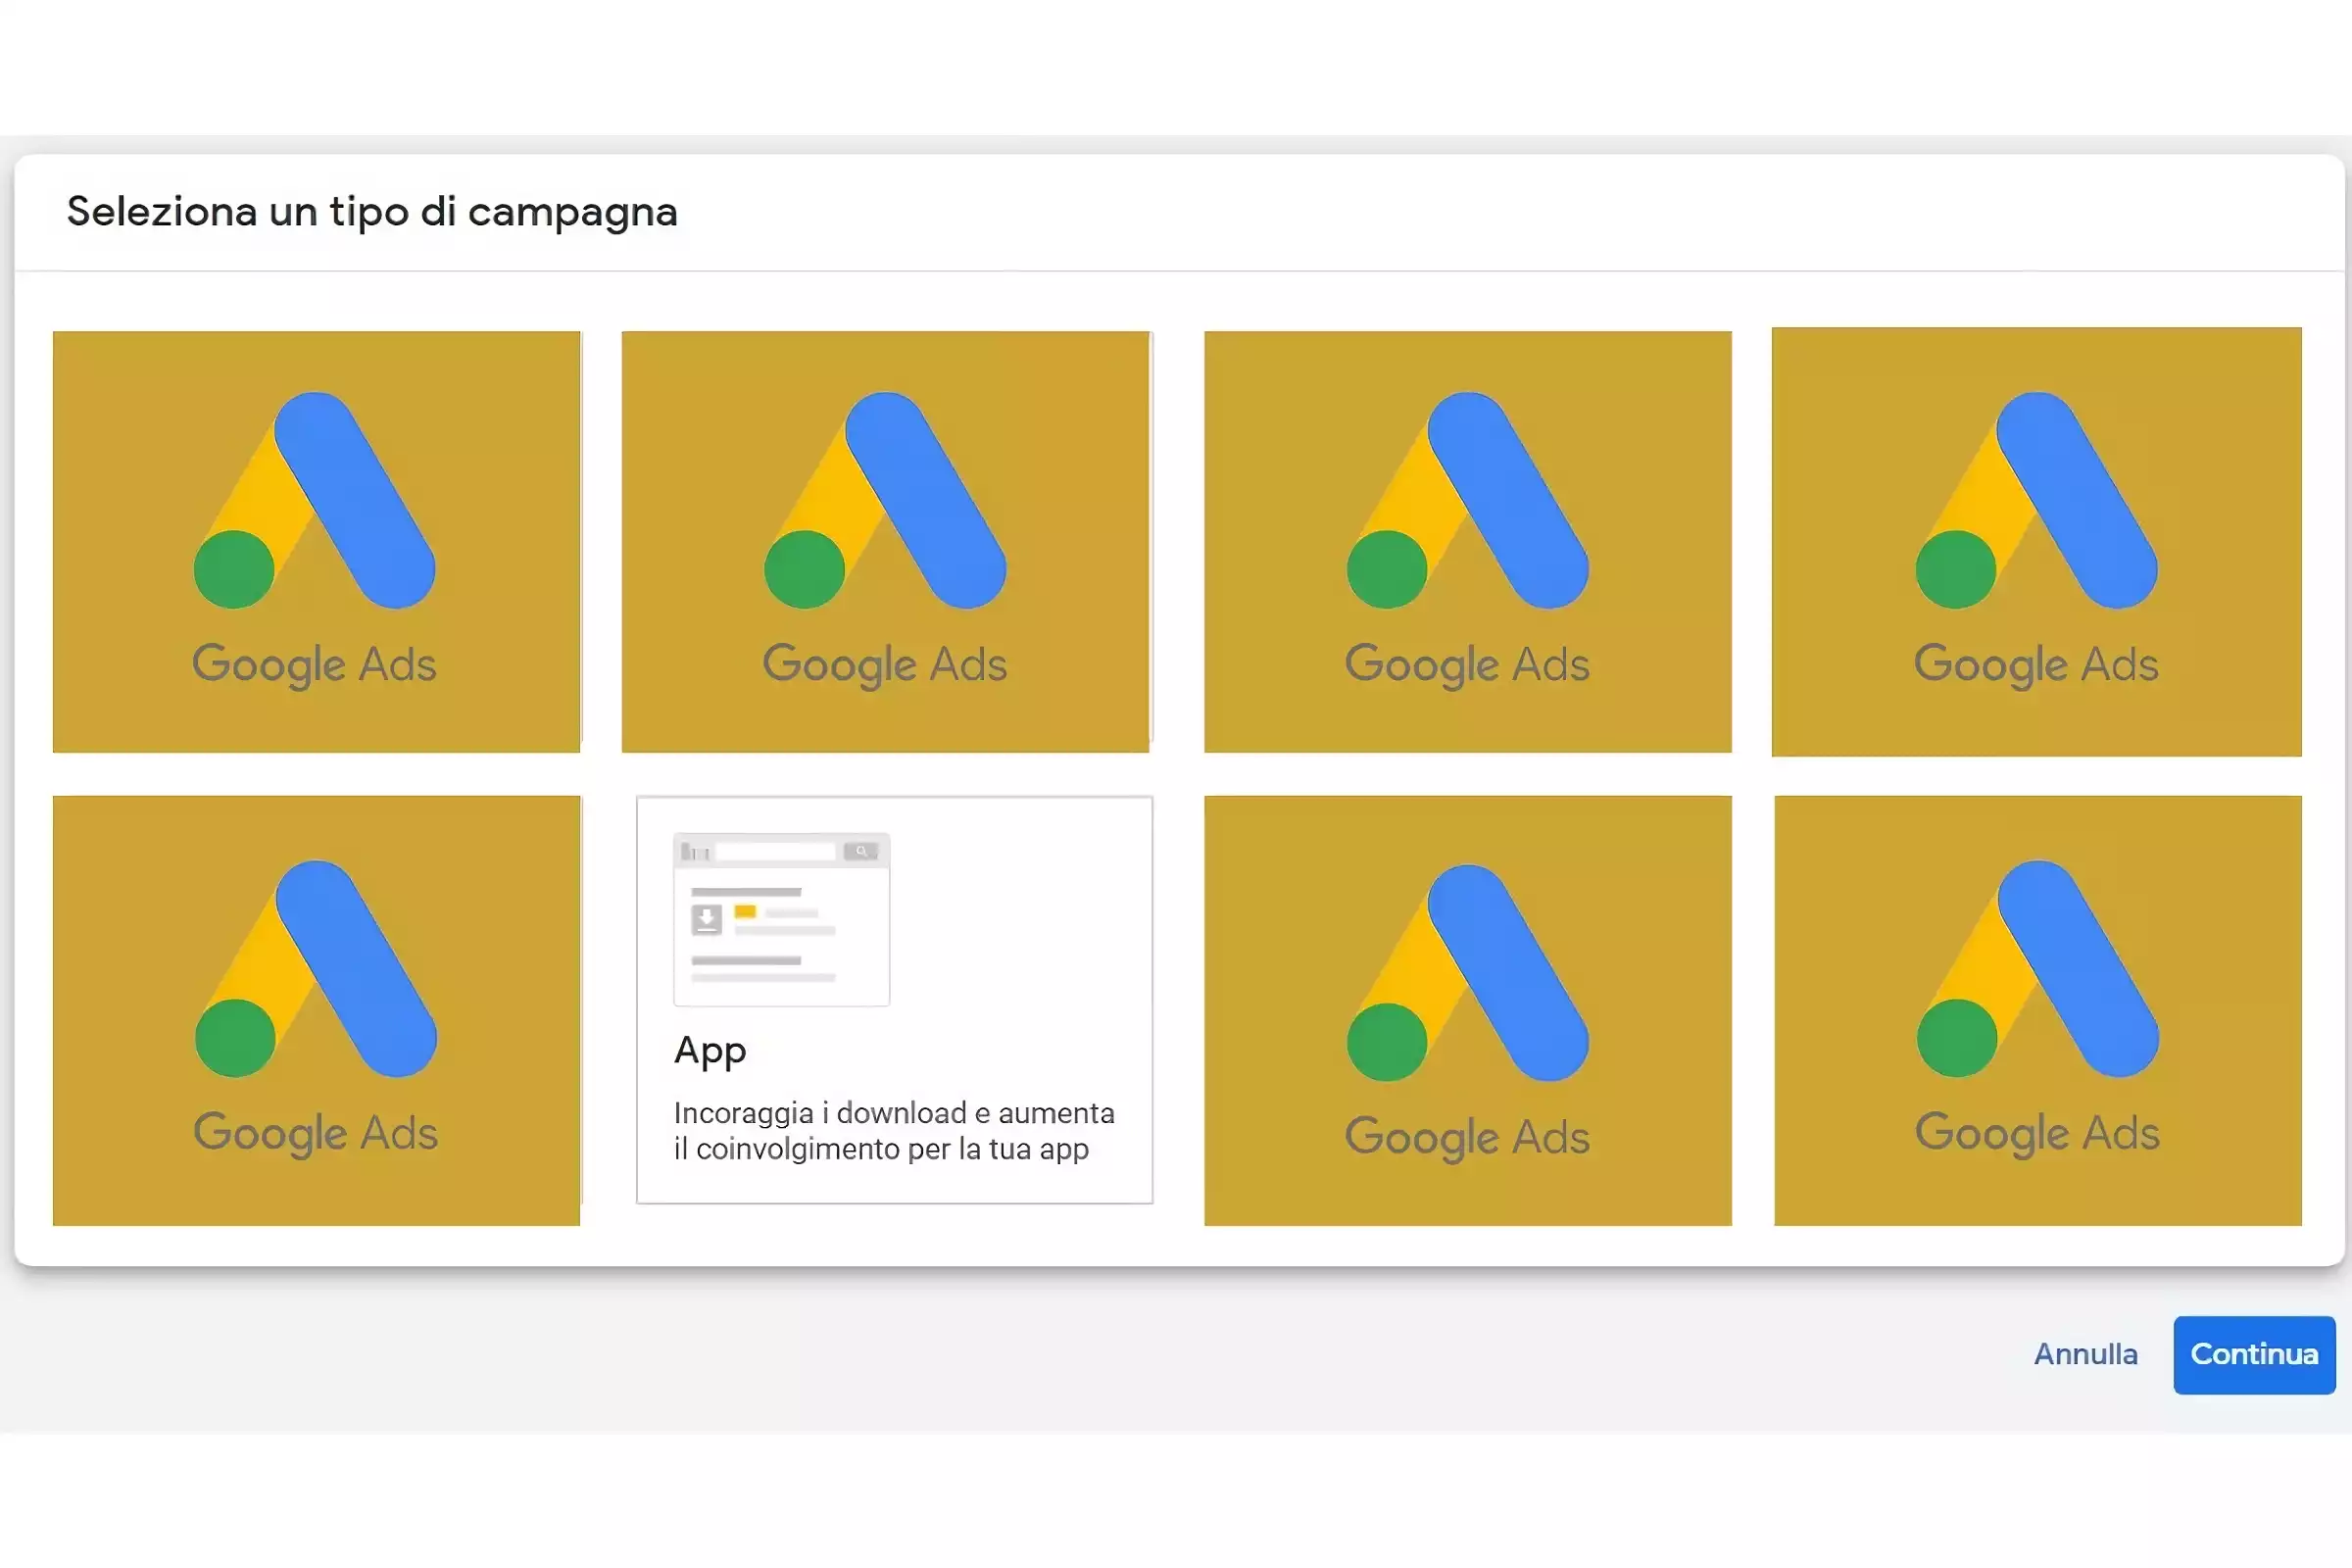 Immagine descrittiva che rappresenta la tipologia di campagna "app" su Google Ads. L'immagine viene utilizzata per far capire al lettore come funziona Google Ads e quali campagne ha a disposizione da poter scegliere.